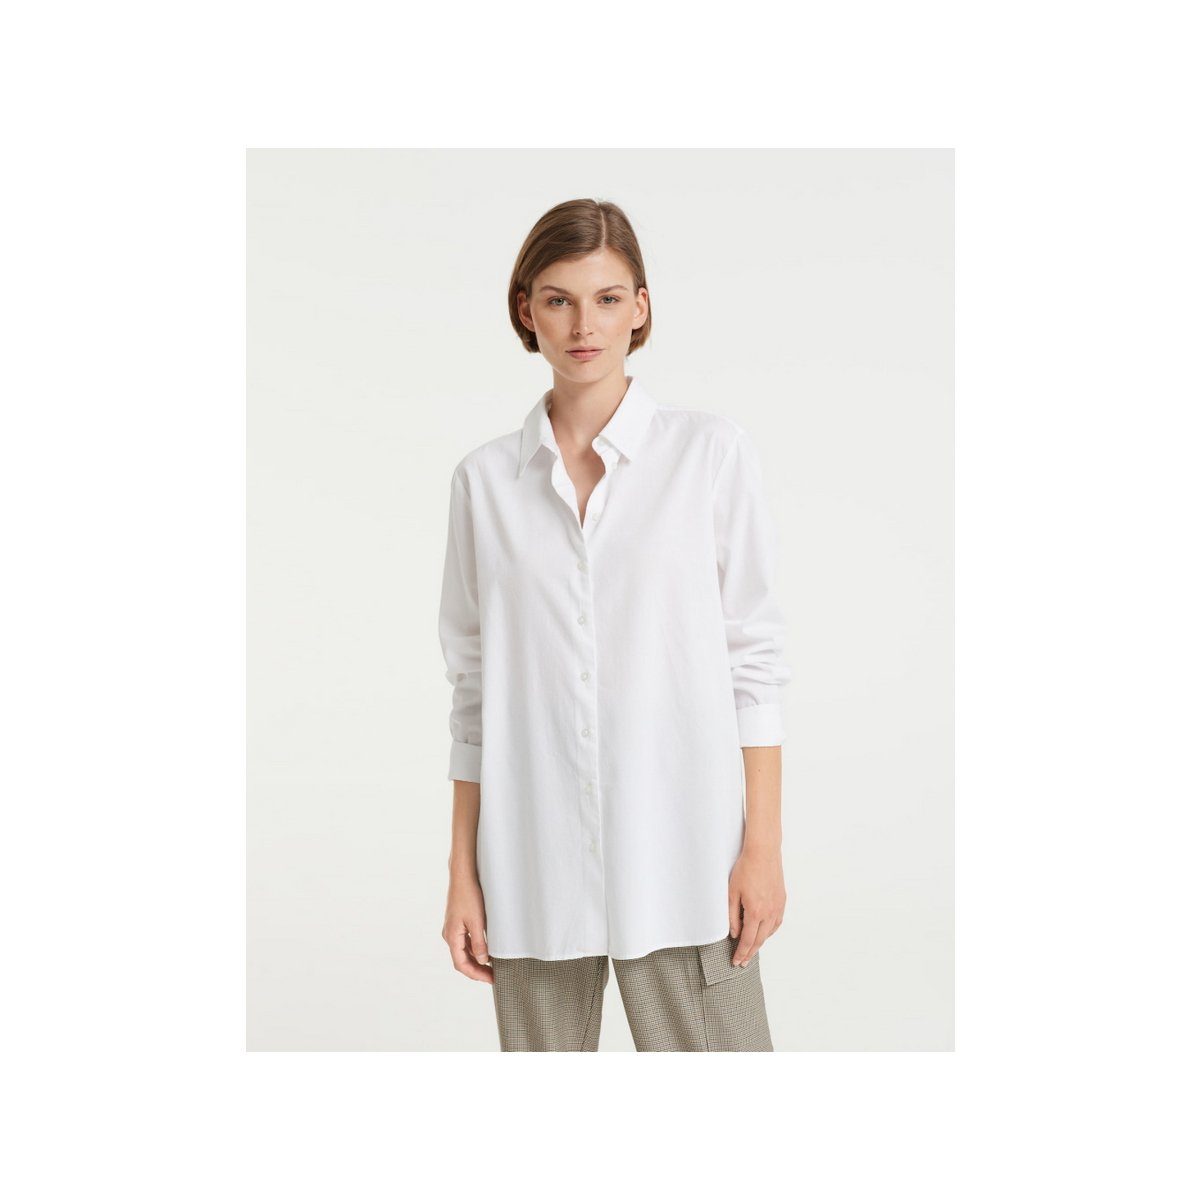 Weiße OPUS Blusenshirts für Damen online kaufen | OTTO